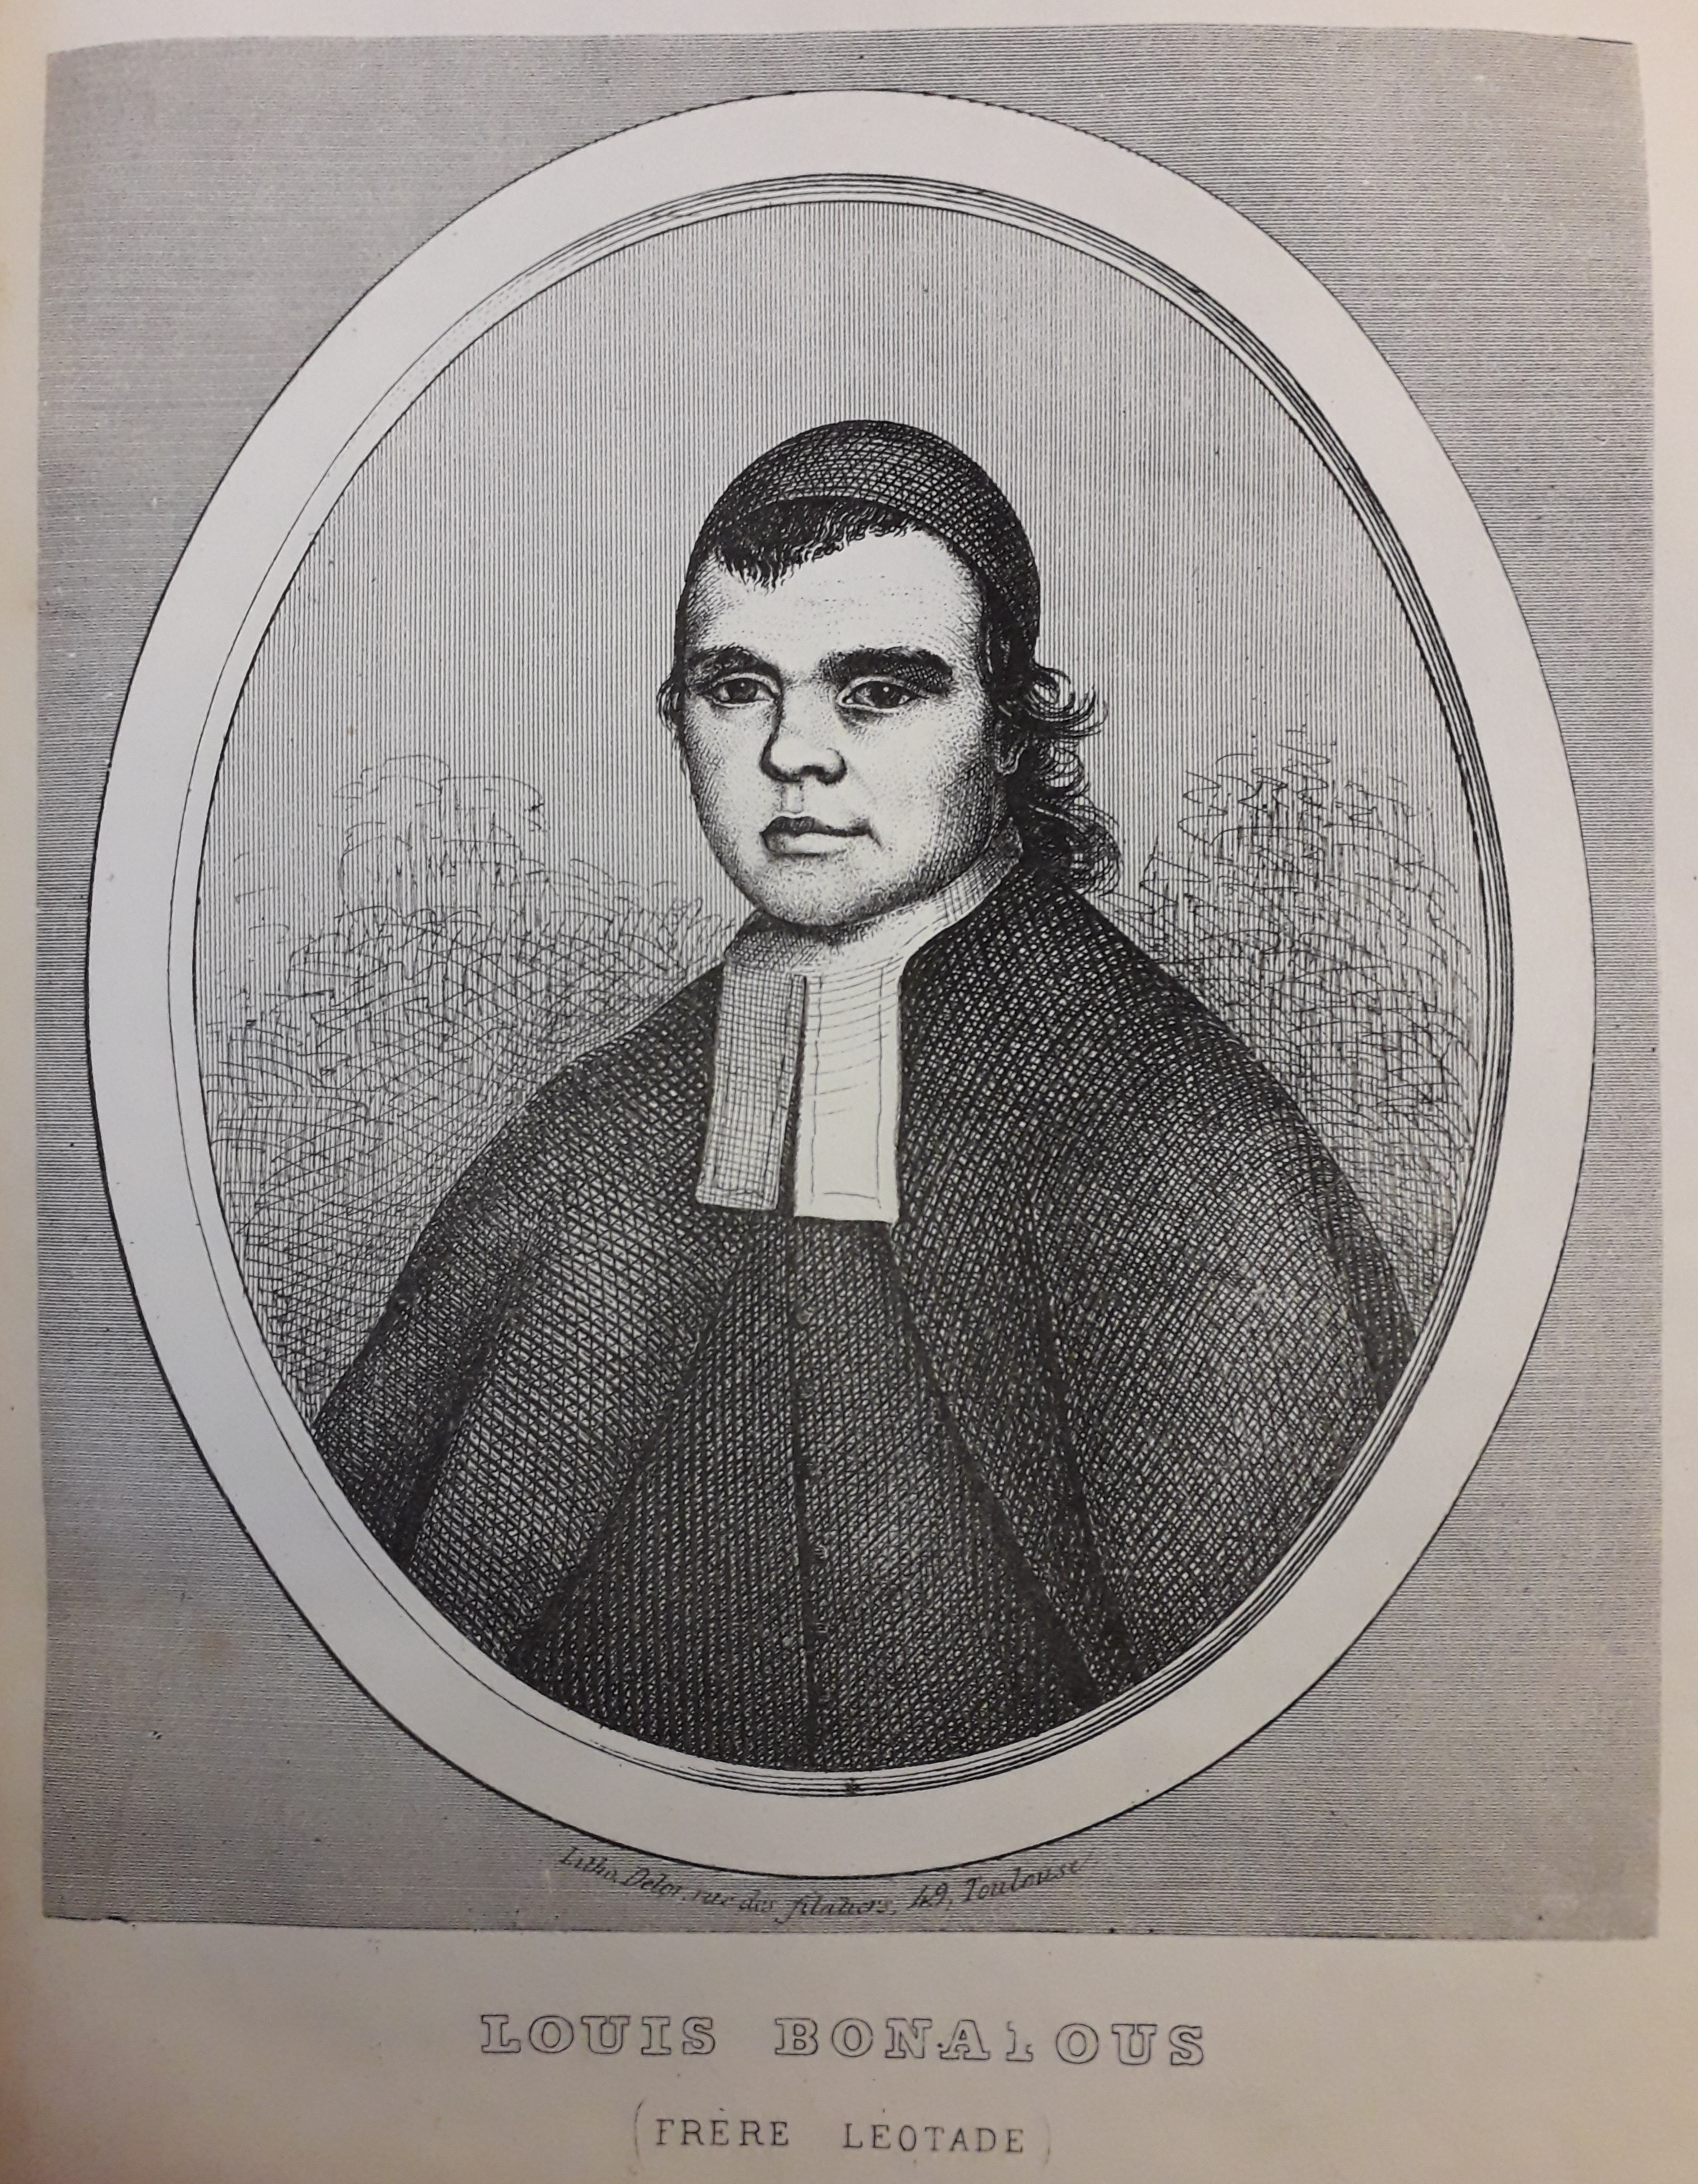 Portrait de frère Léotade. Affaire Cécile Combettes : accusation de viol et meurtre contre Louis Bonafous, en religion Frère Léotade. Jougla, 1848